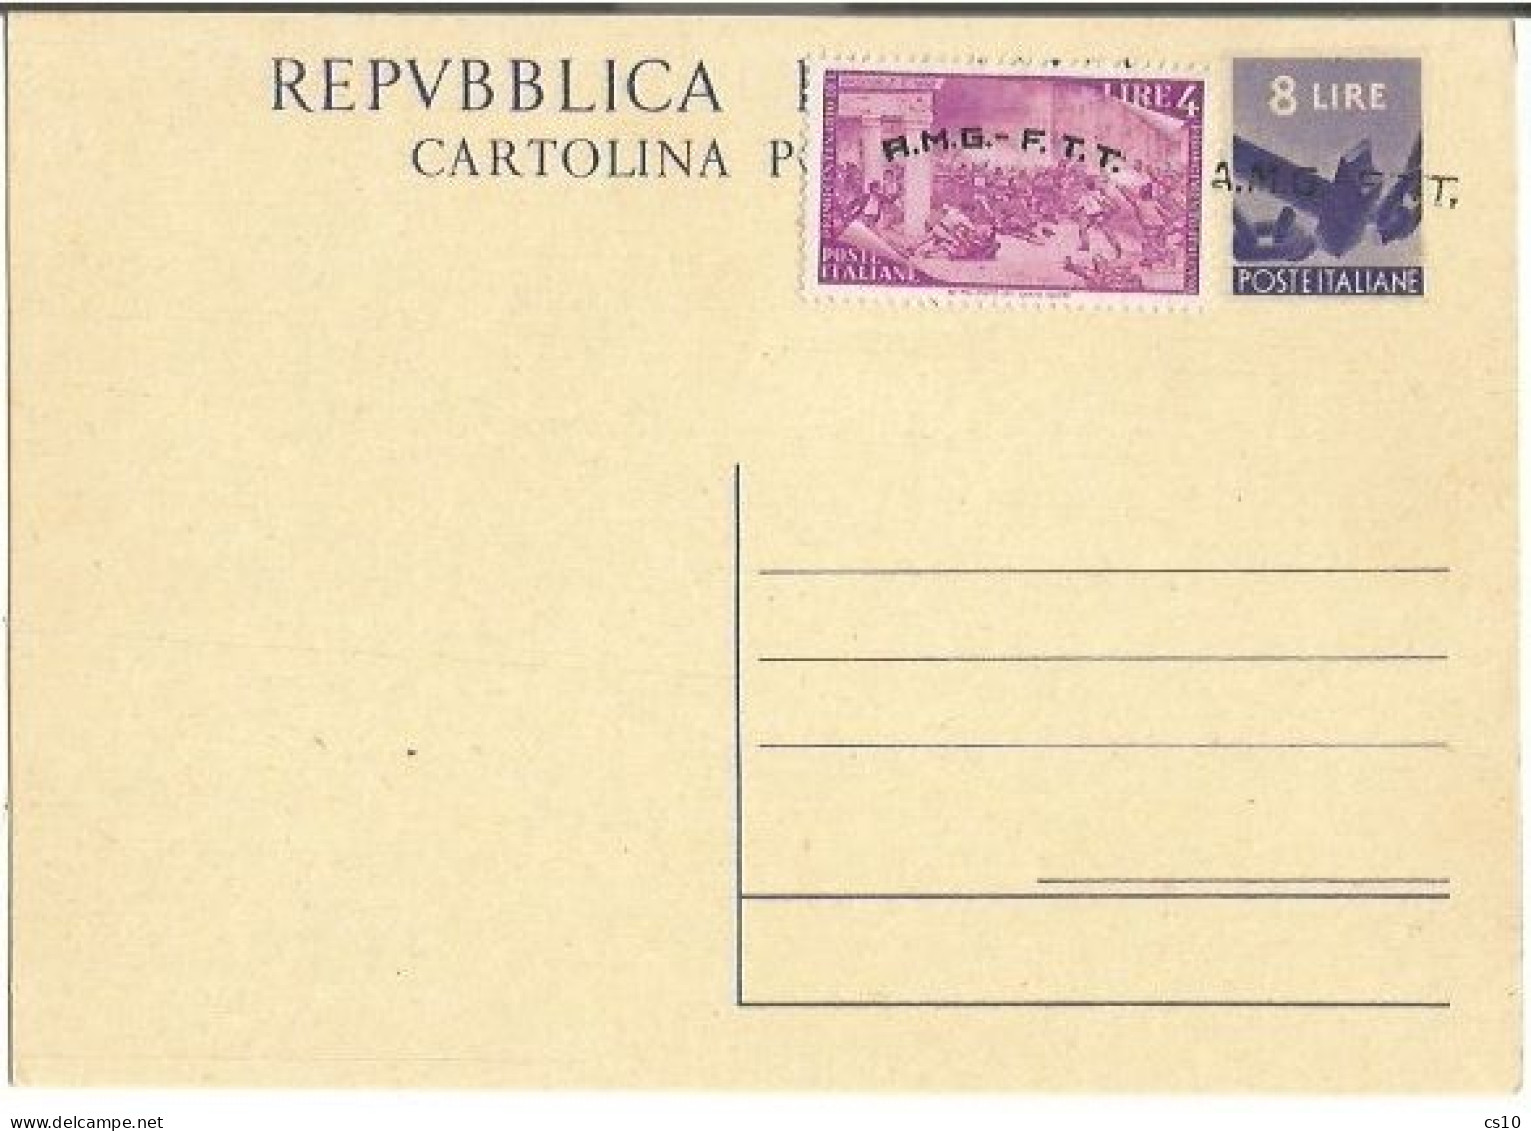 Trieste "A" AMG-FTT 1947 Cart.Postale Democratica L.8 #C2 Soprast.A Con Risorgimento L.4 Nuova NON VIAGGIATA - Marcophilie